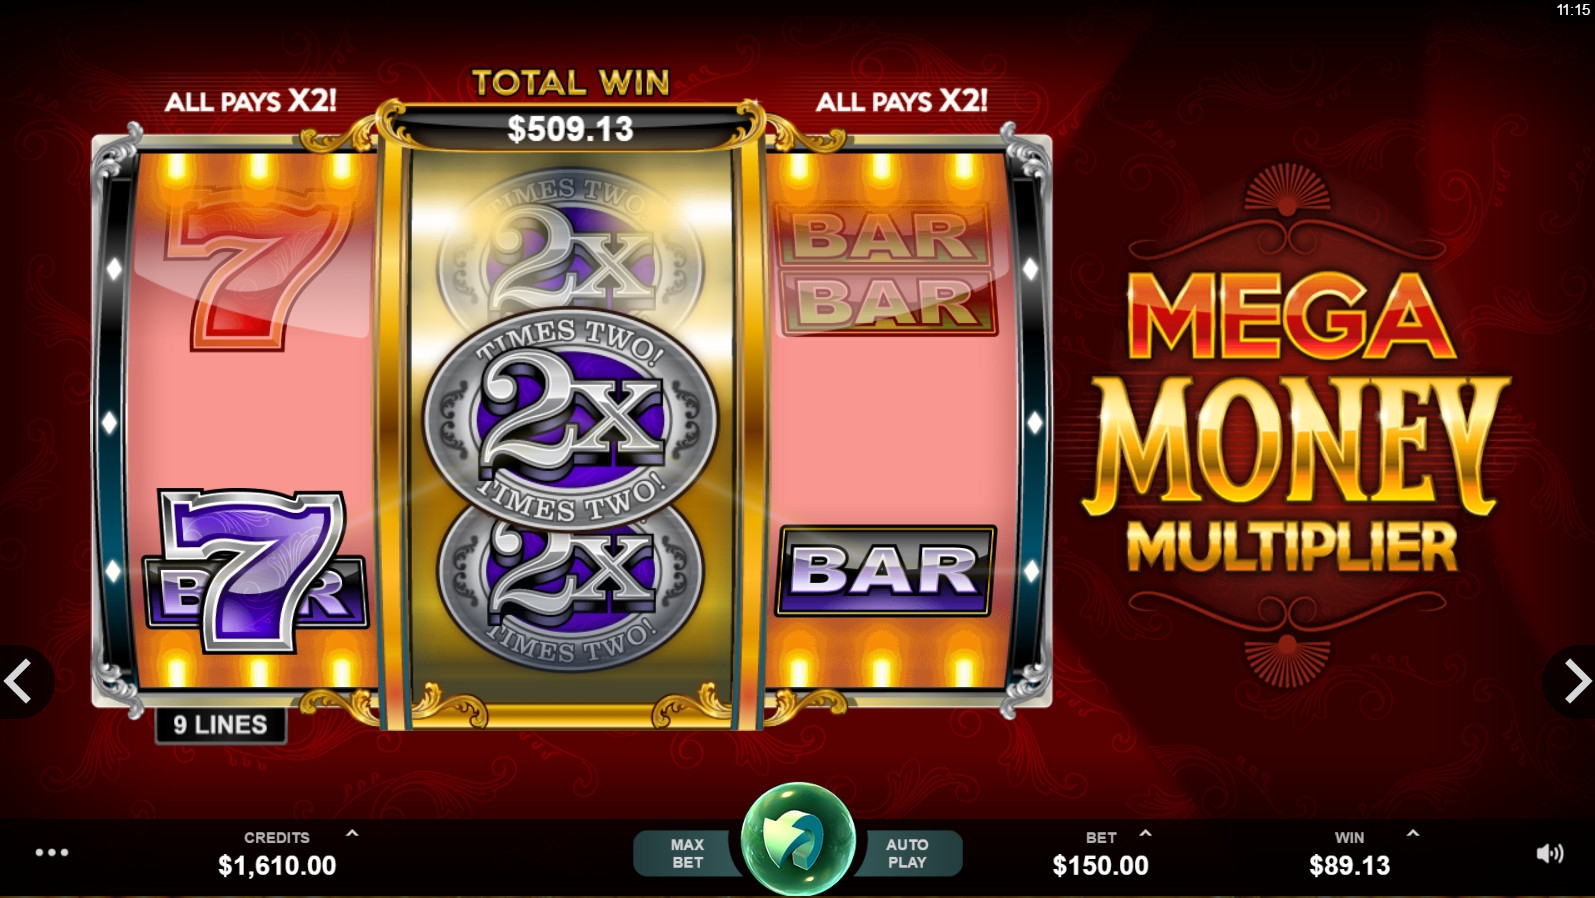 Mega Money Multiplier (Mega Money Multiplier) from category Slots